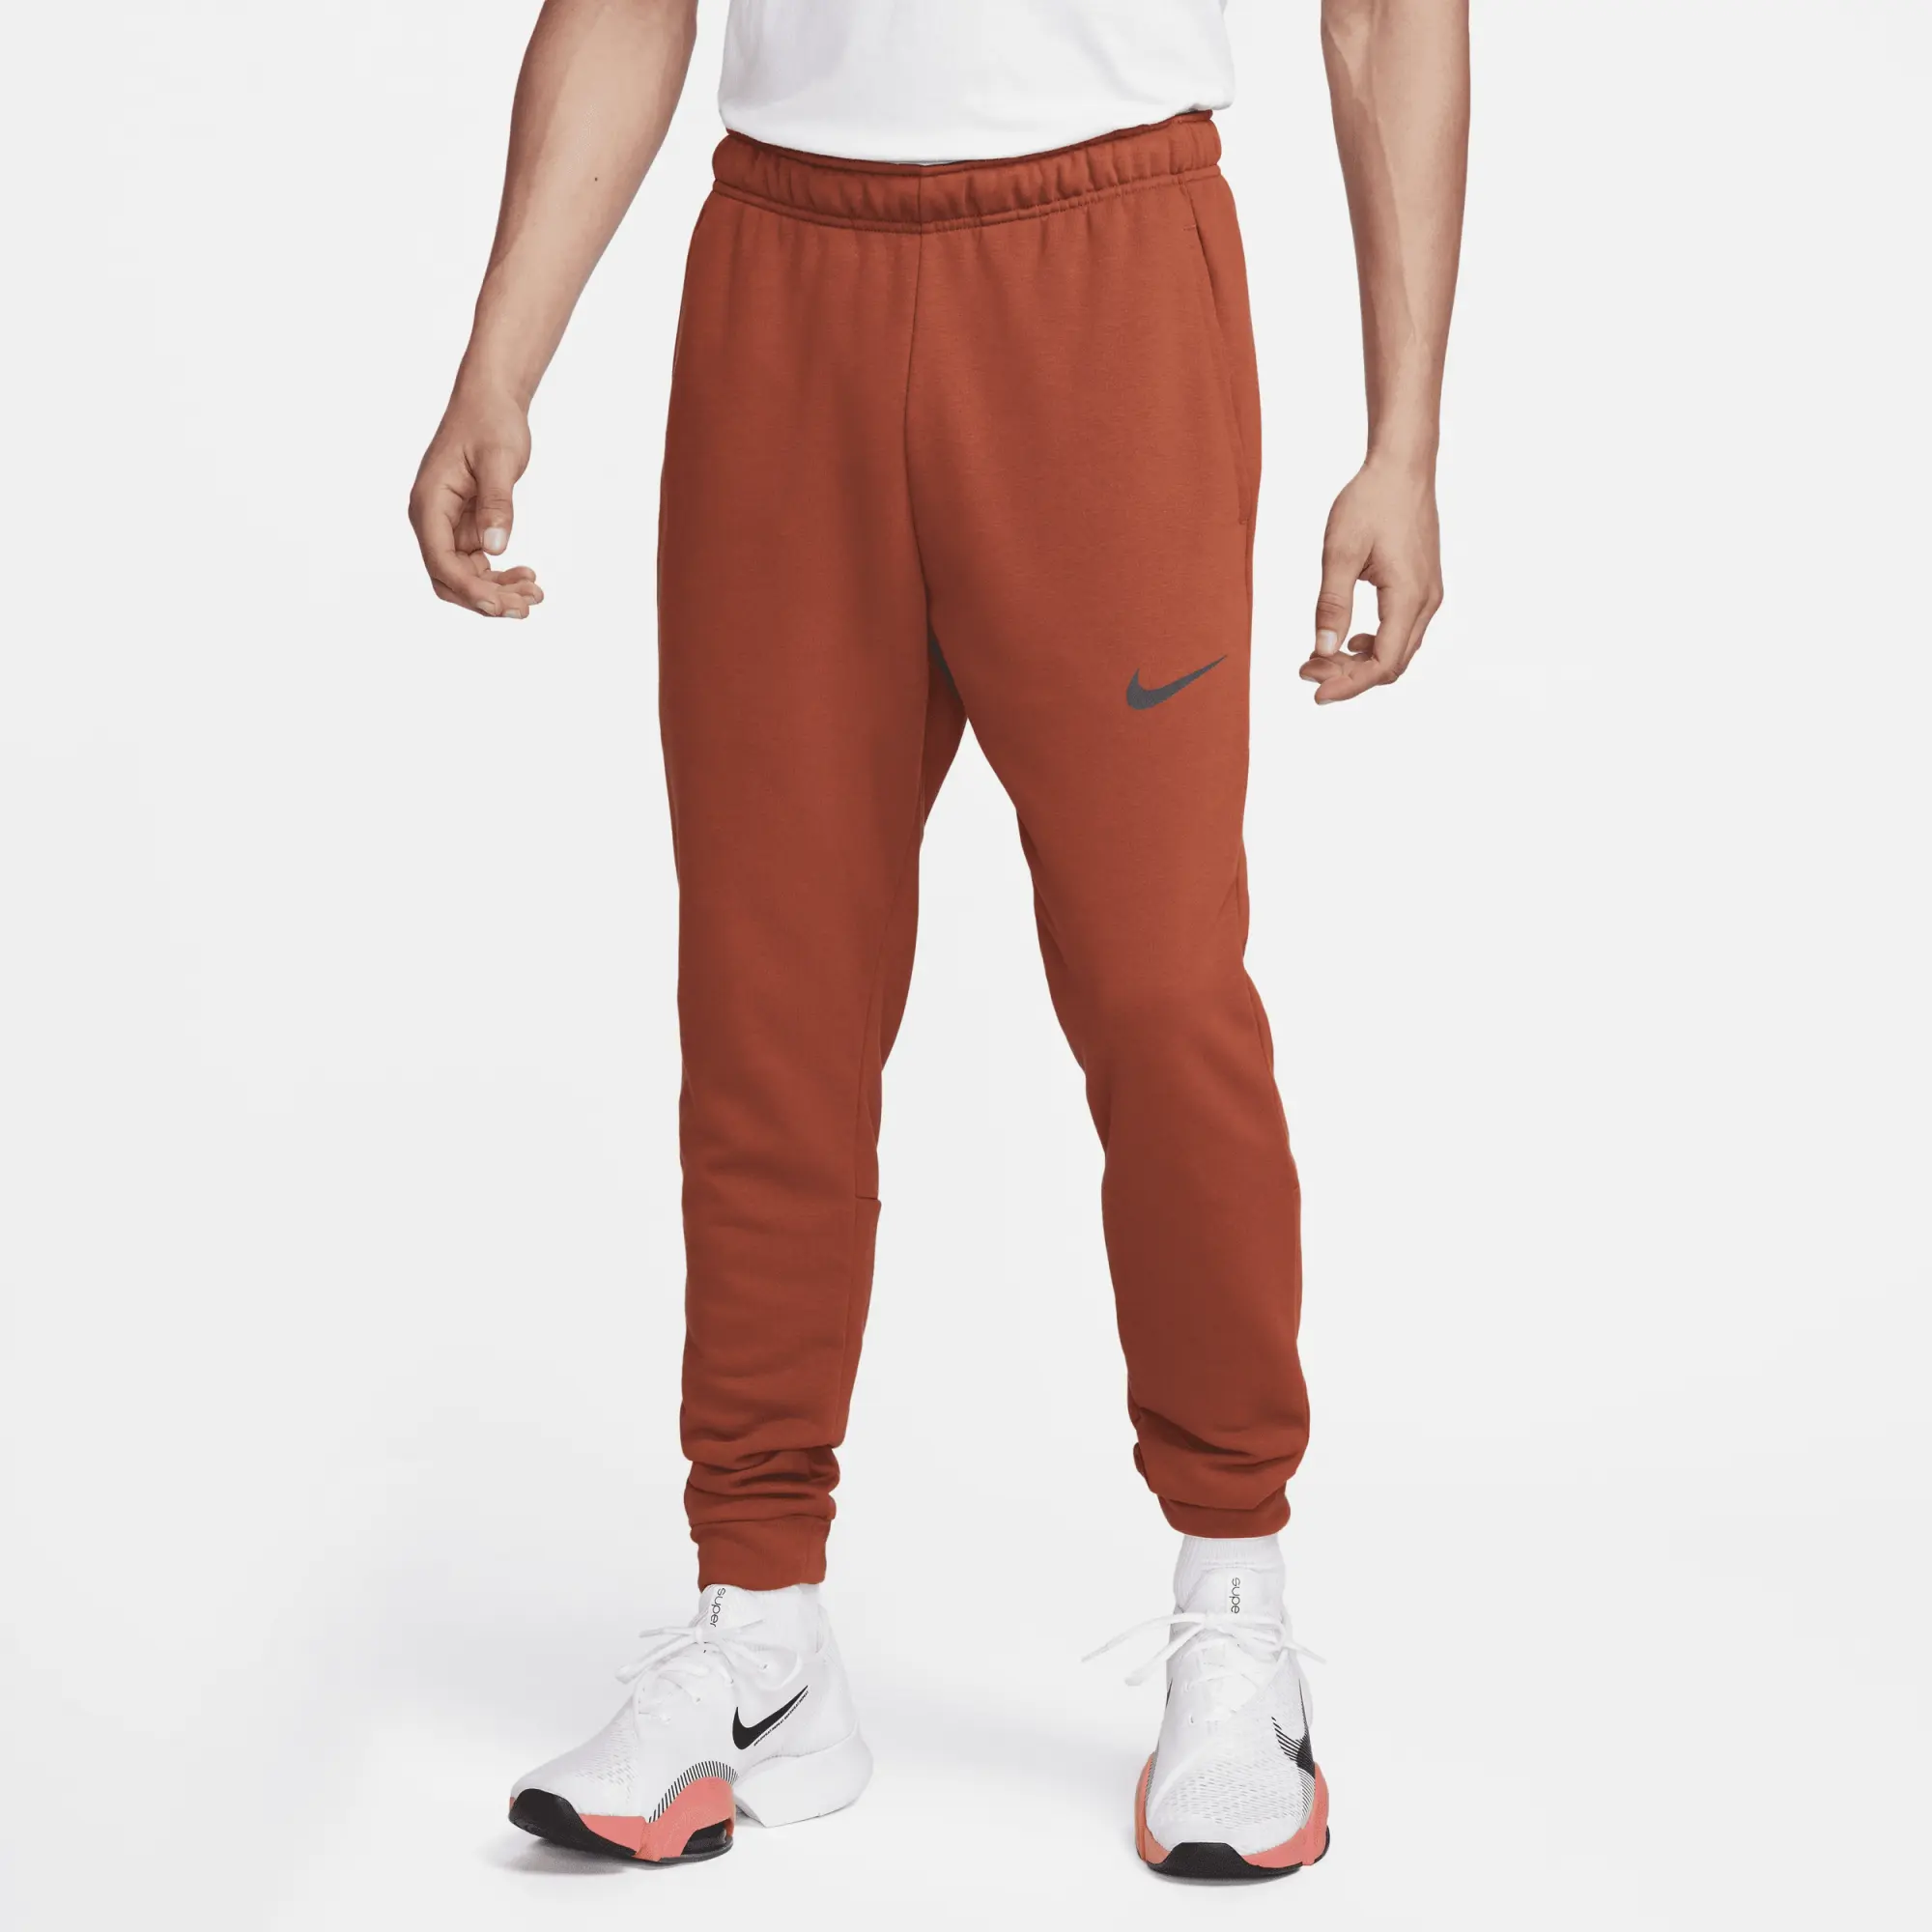 Nike Dry Men's Dri-FIT Taper Fitness Fleece Trousers - Orange